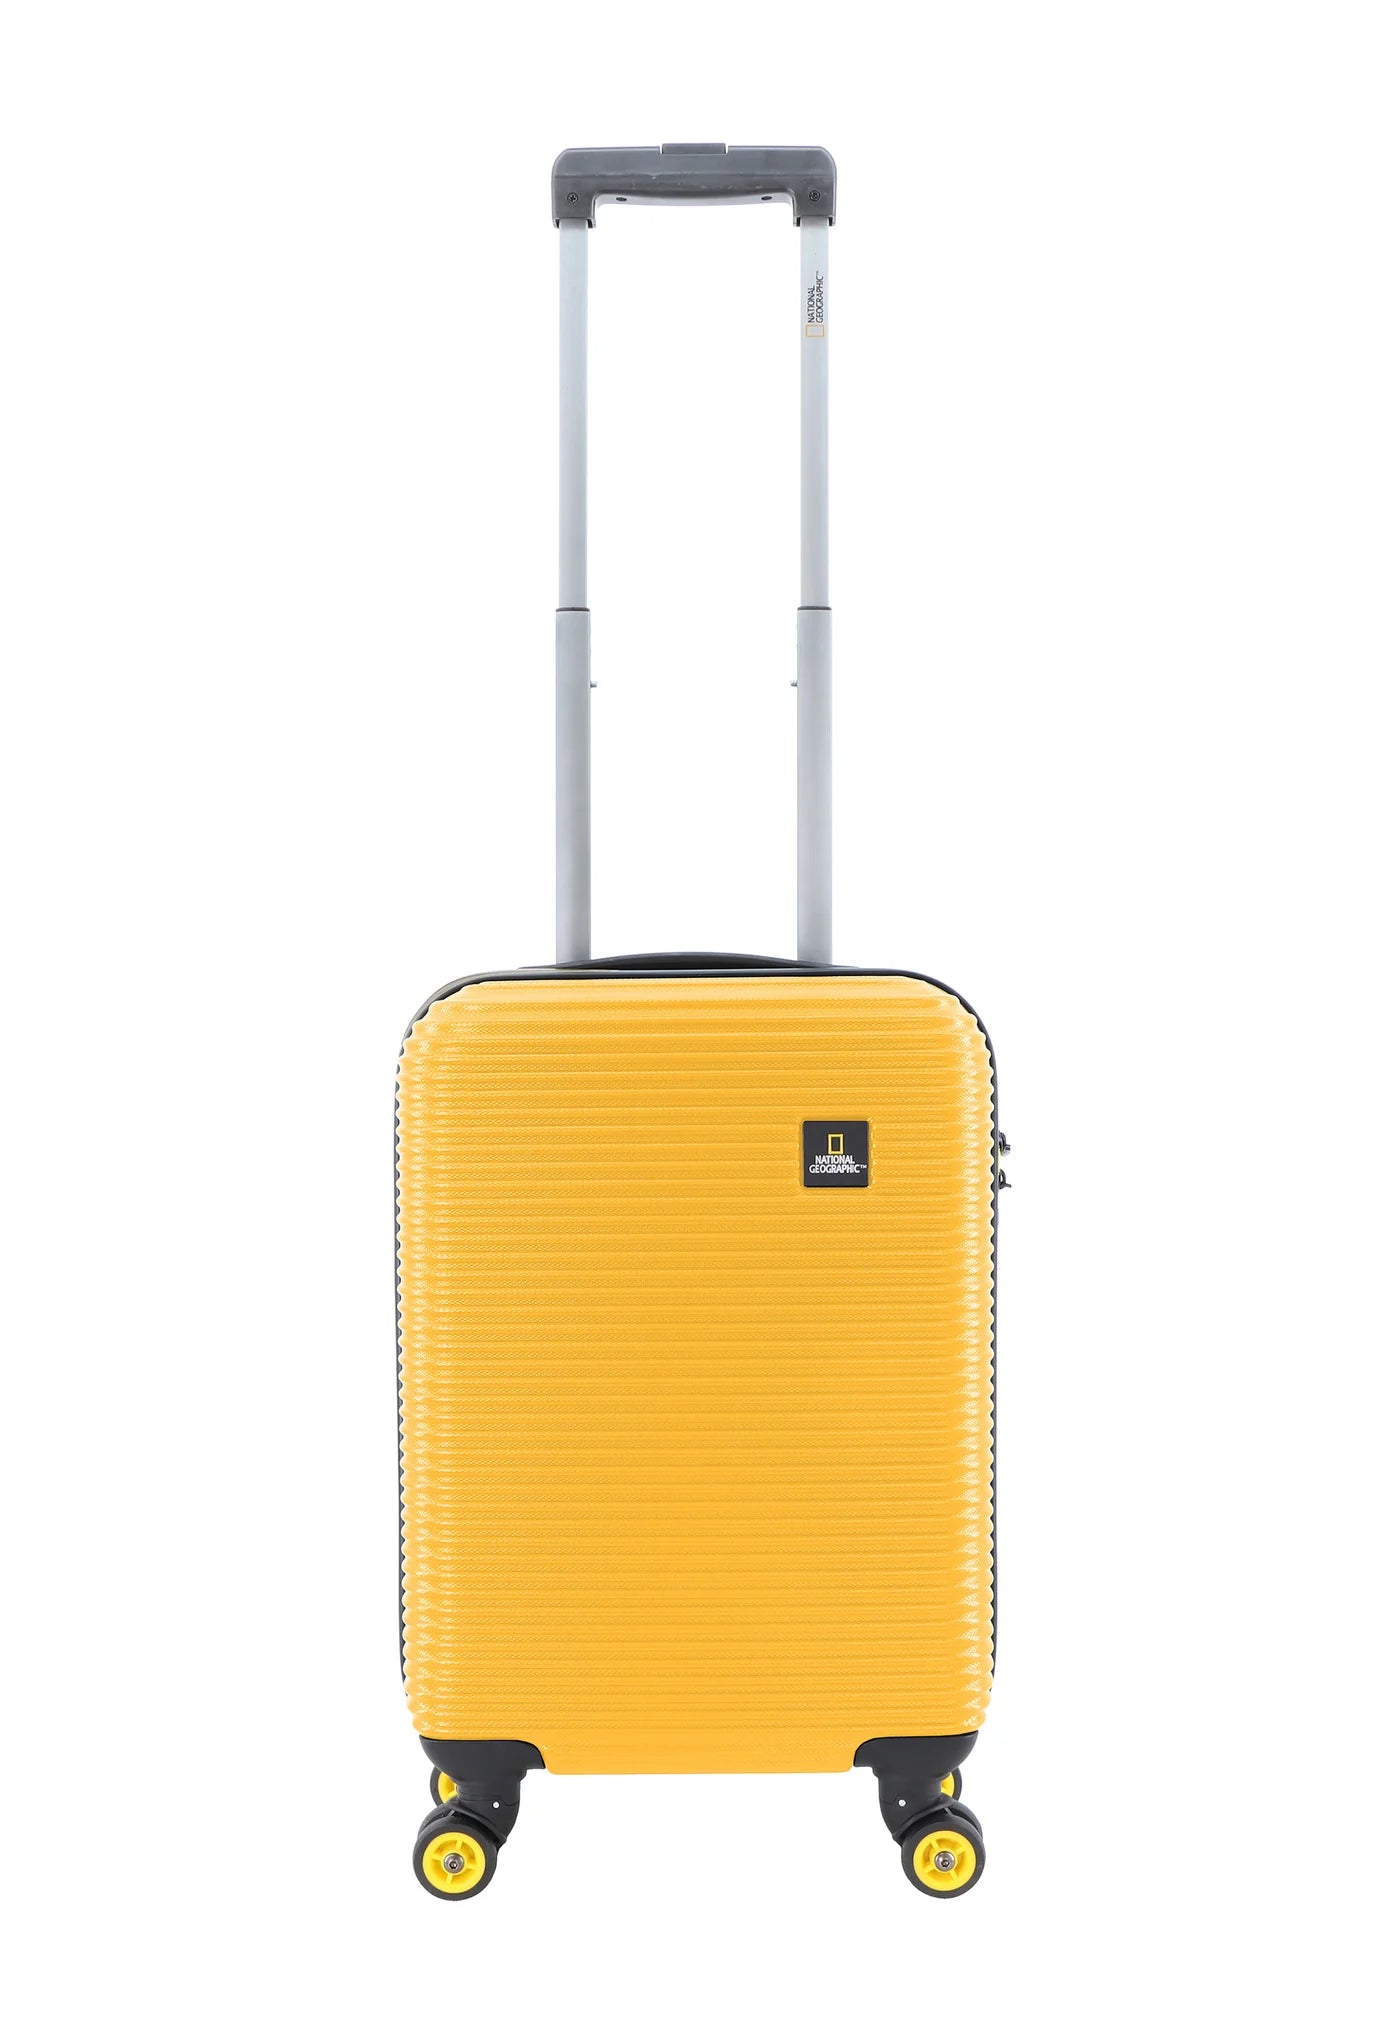 Valise rigide pour bagage à main National Geographic / Trolley / Valise de voyage - 55 cm (Petite) - À l'étranger - Jaune